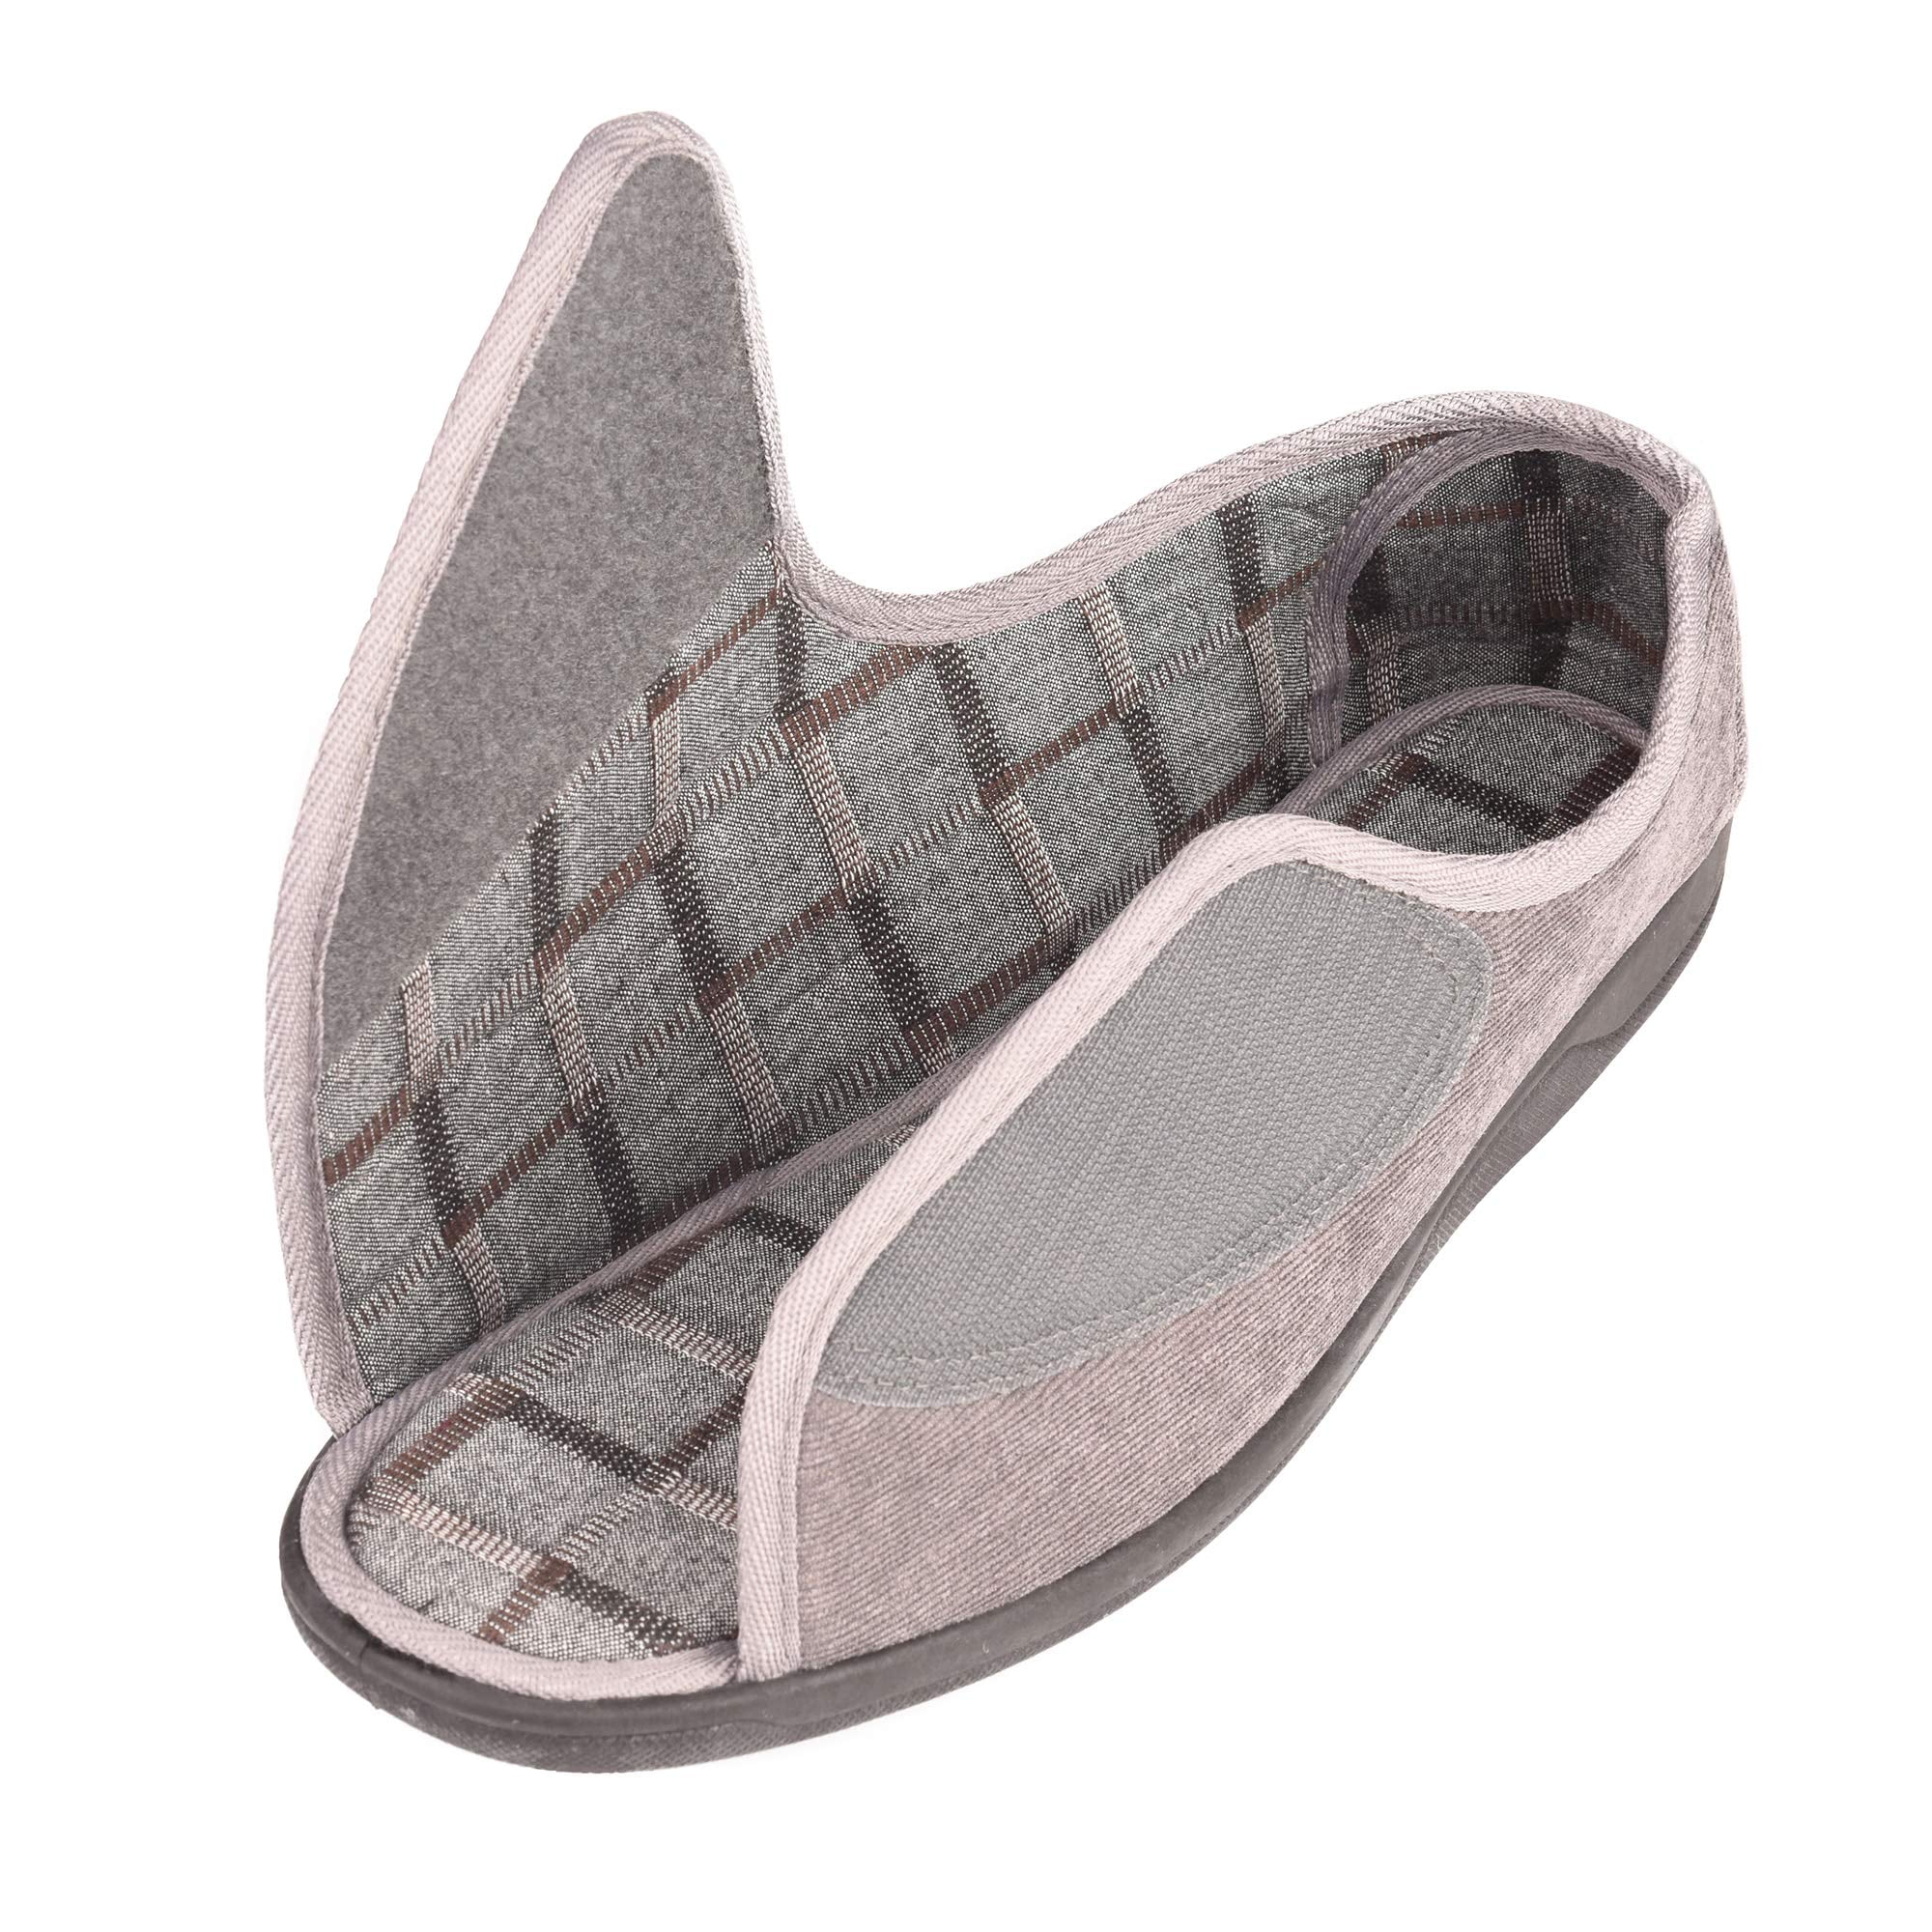 Men's 80-D Memory Foam Open Toe Diabetic Slipper with Adjustable